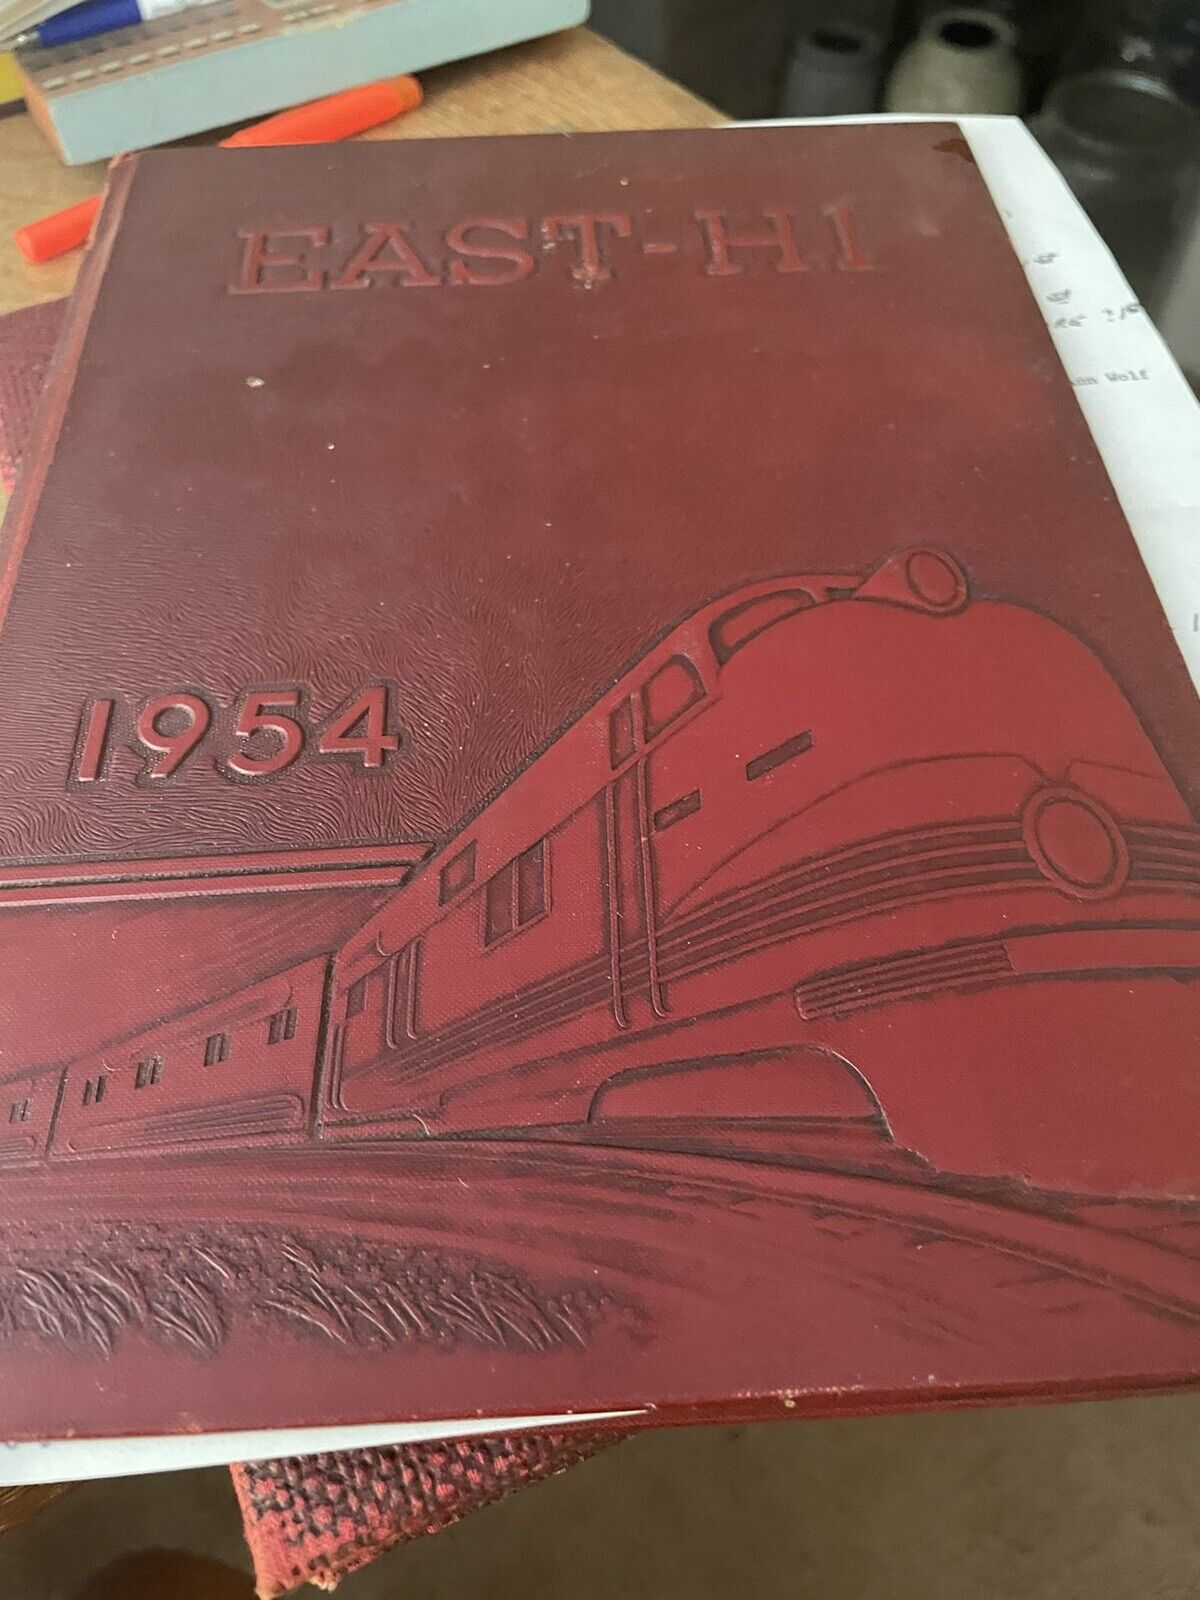 1954 East Hi Huntington East High School yearbook WV WVA